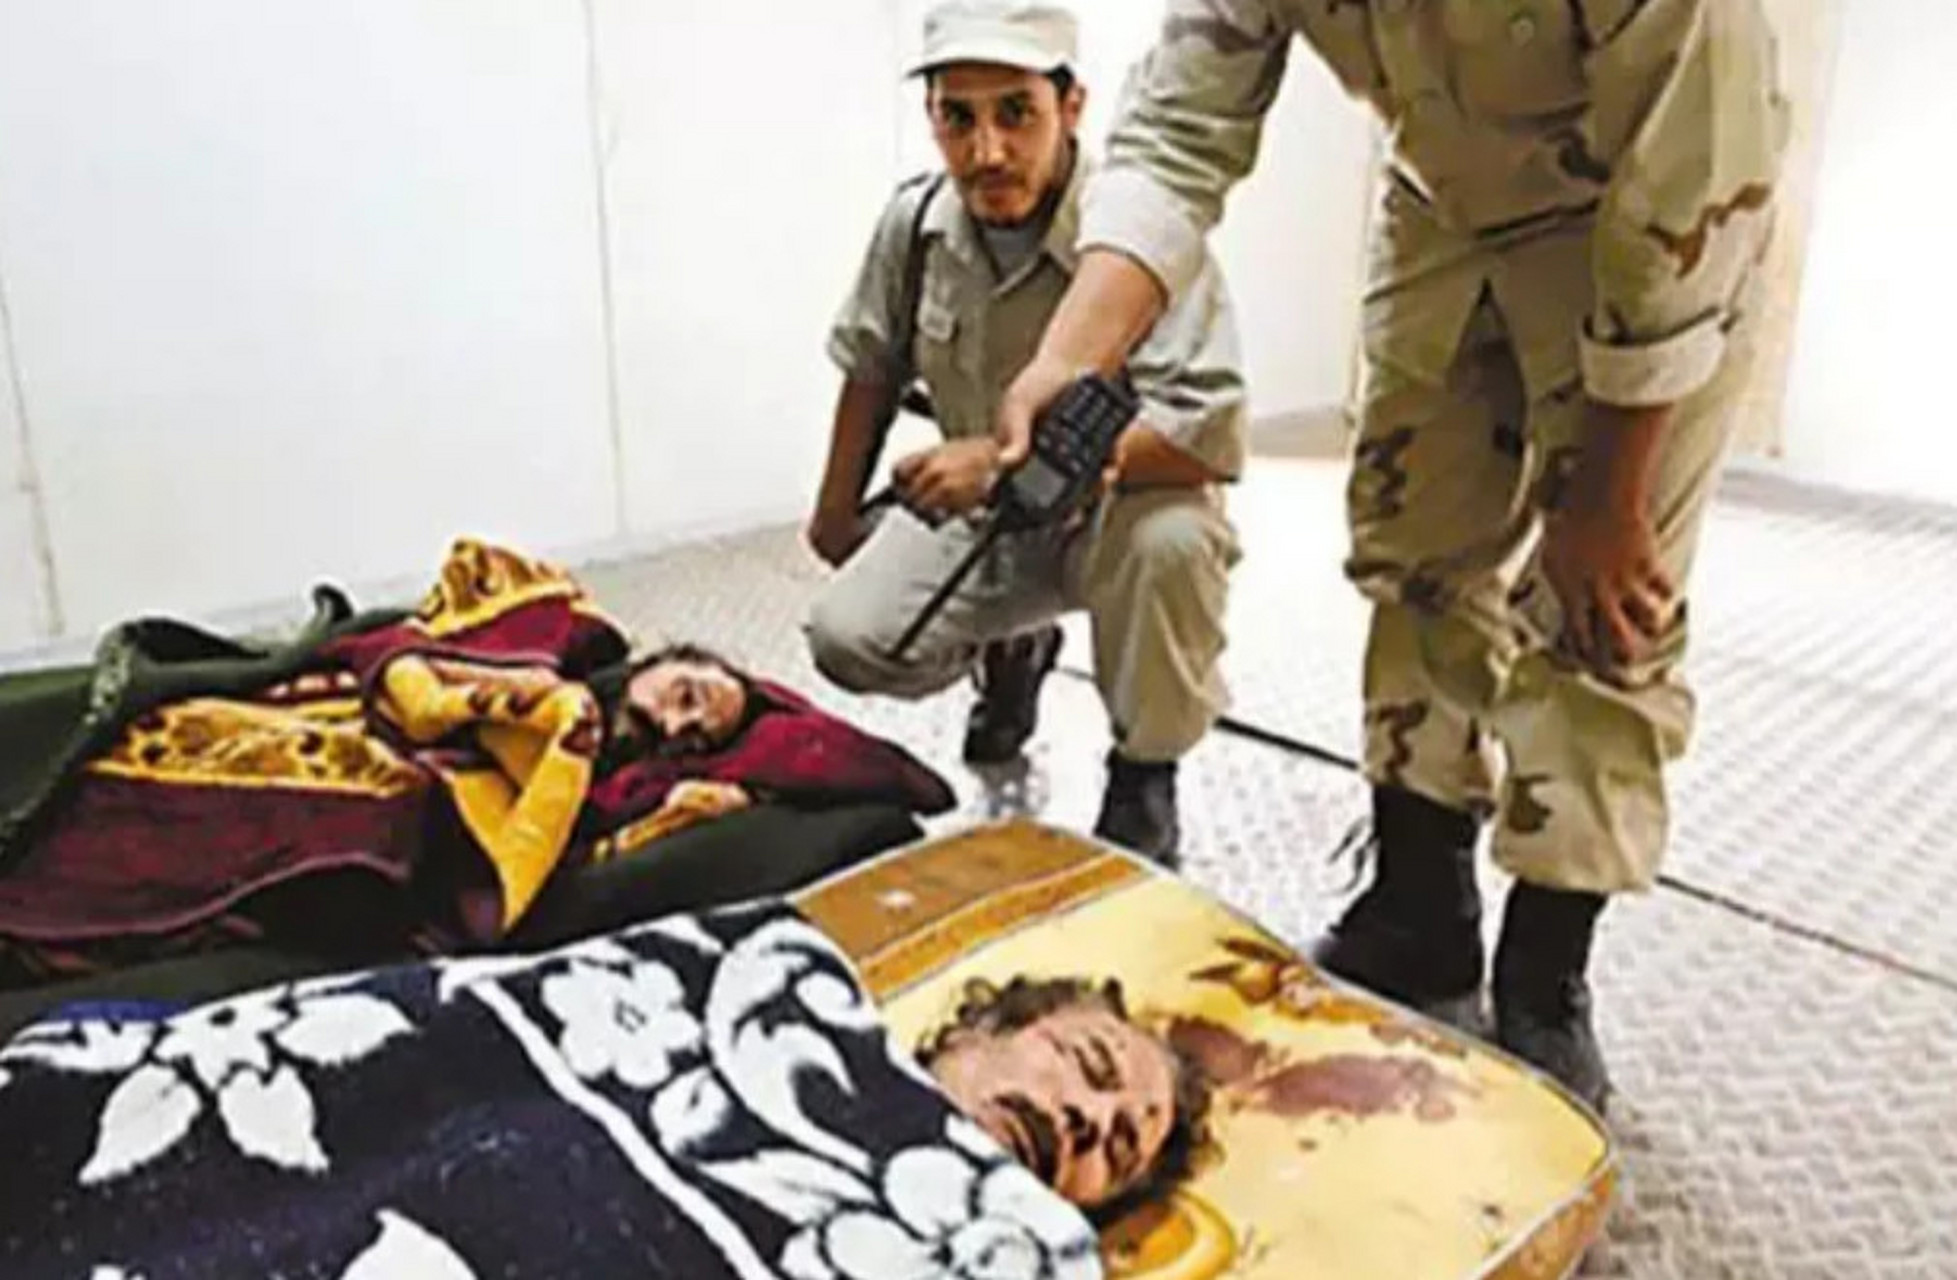 下图是2011年10月,卡扎菲的第五个儿子穆塔西姆临死前的照片,他向反对